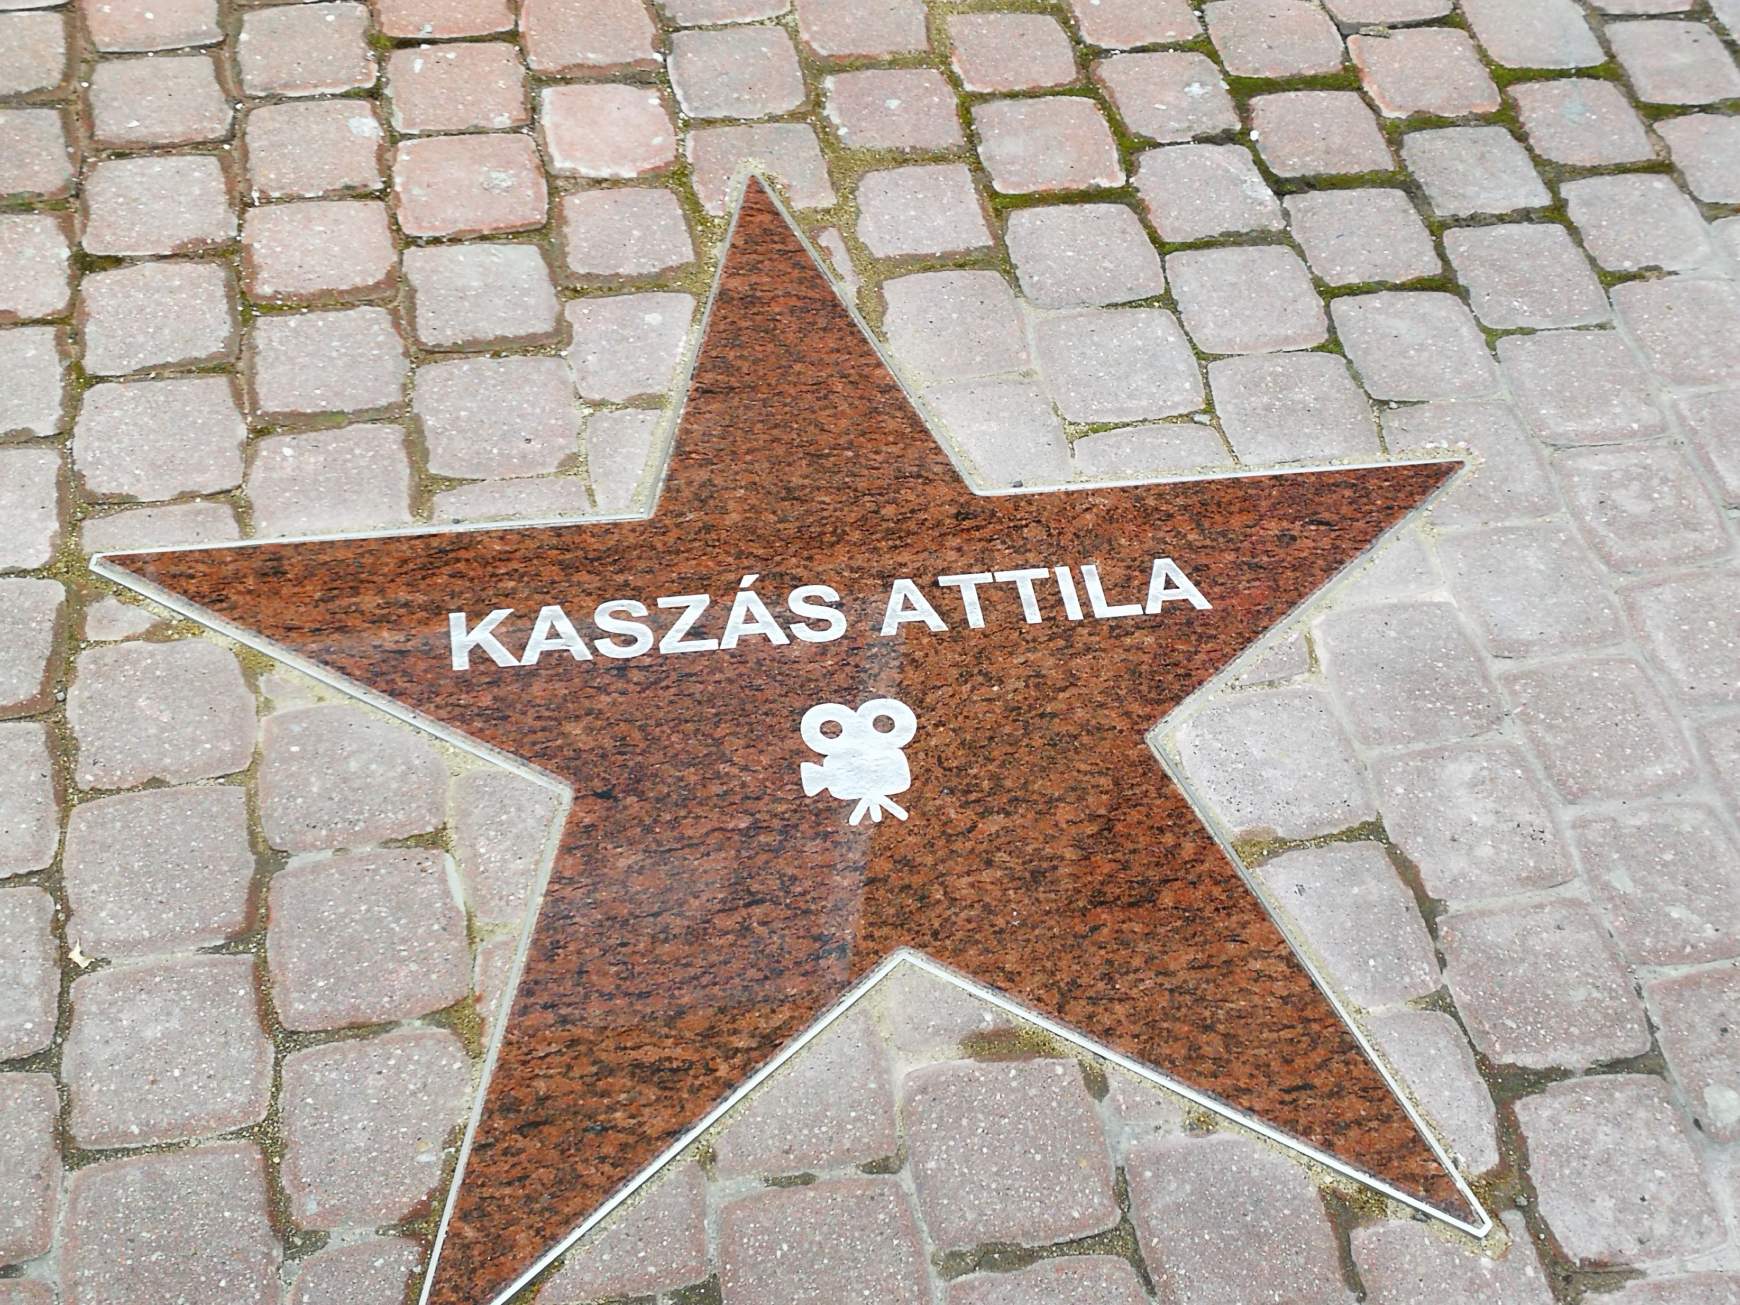 Már nem csak az égen ragyog a 15 évvel ezelőtt elhunyt Kaszás Attila csillaga